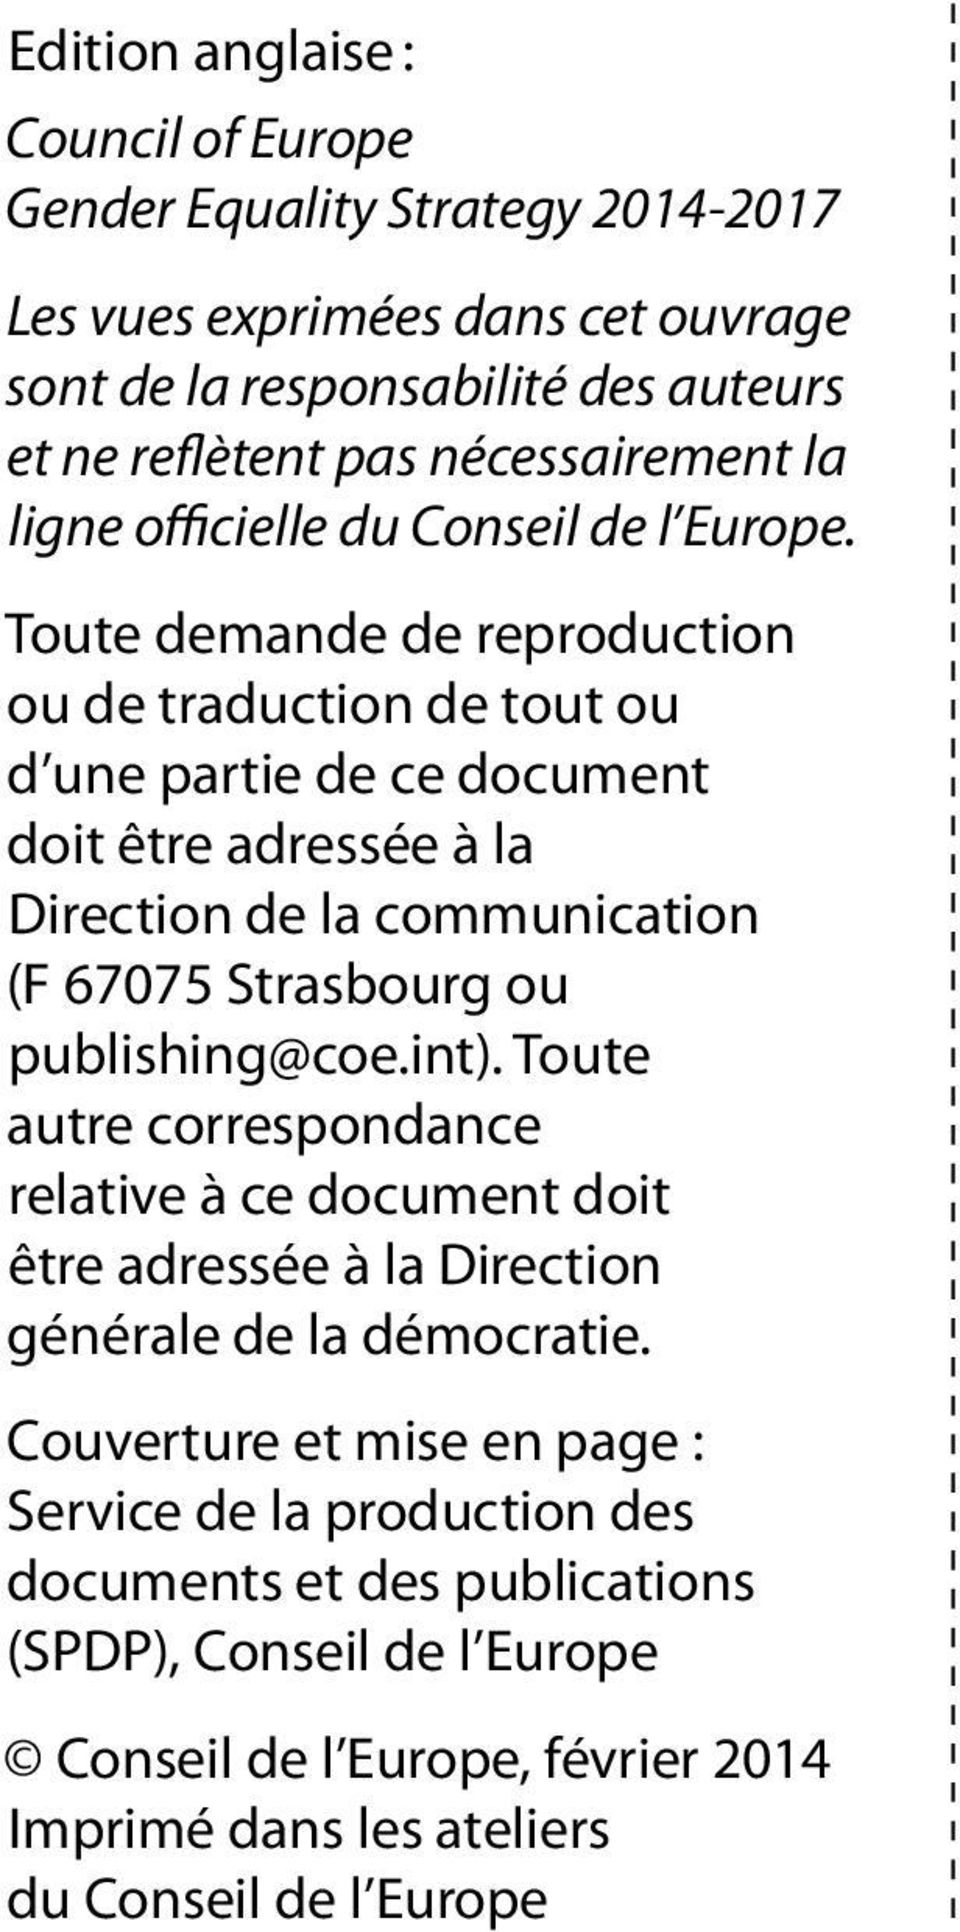 Toute demande de reproduction ou de traduction de tout ou d une partie de ce document doit être adressée à la Direction de la communication (F 67075 Strasbourg ou publishing@coe.